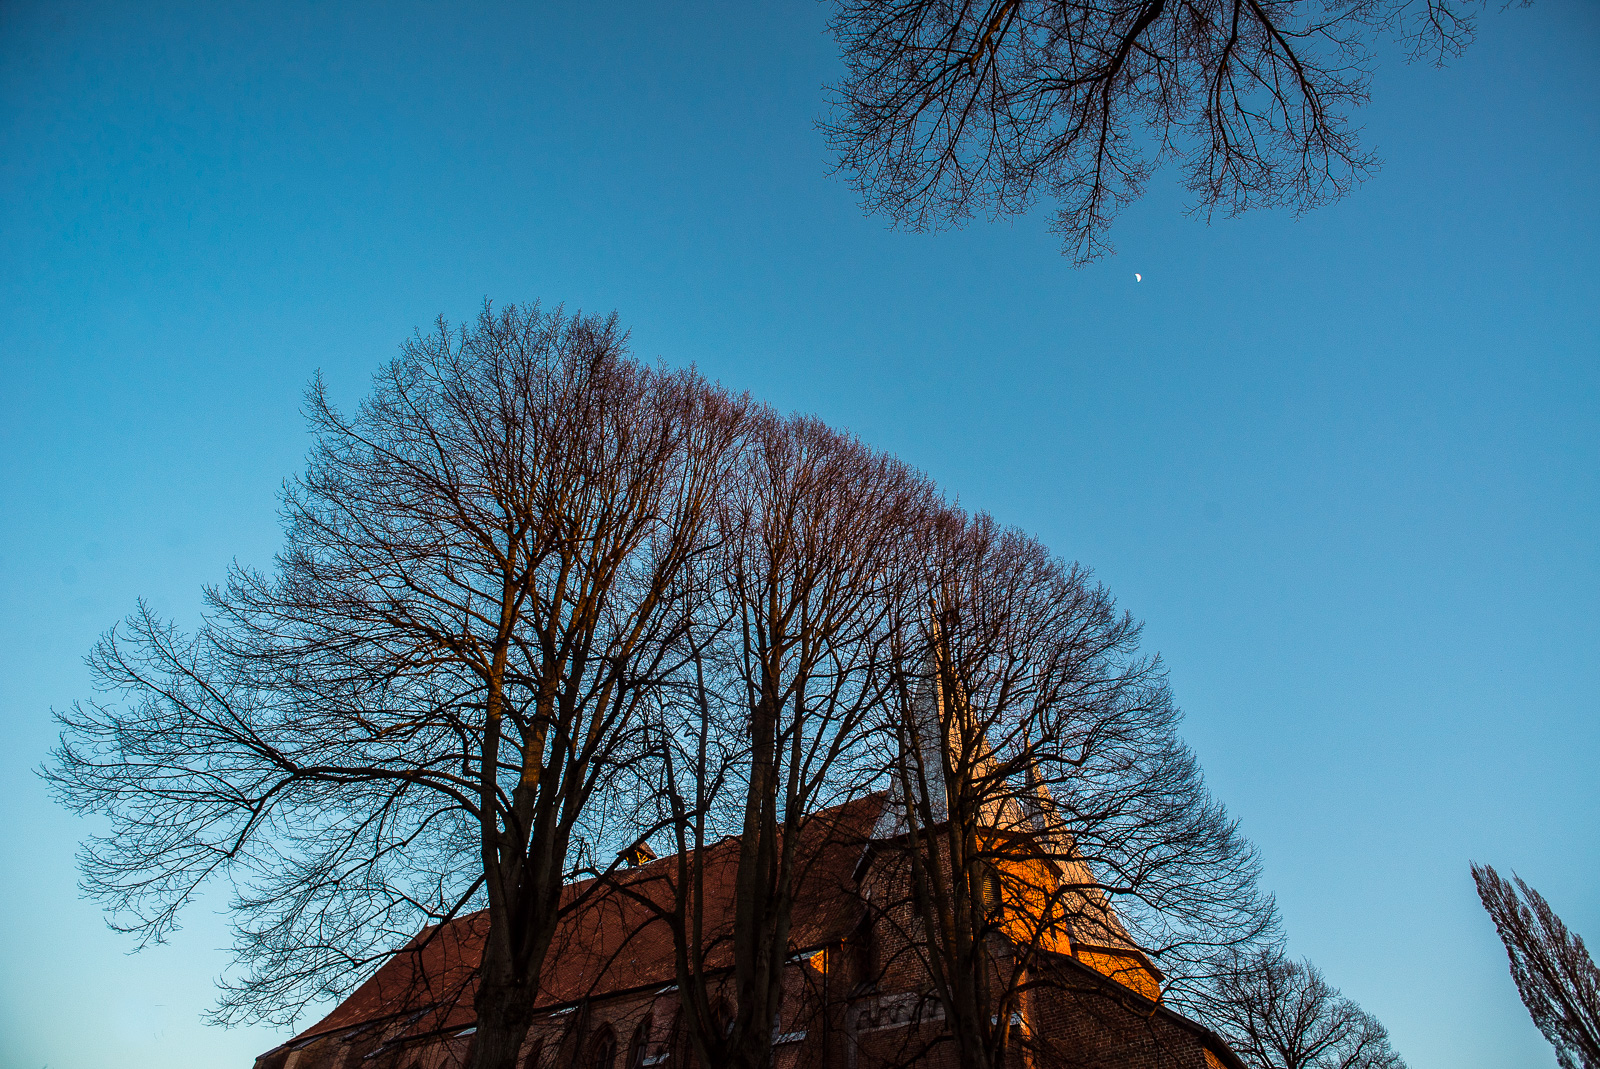 Backstein-Dom von Bardowick: Das gesamte Gebäude hinter mehreren großen Bäumen nur zu erahnen, darüber am blauen Himmel der Mond